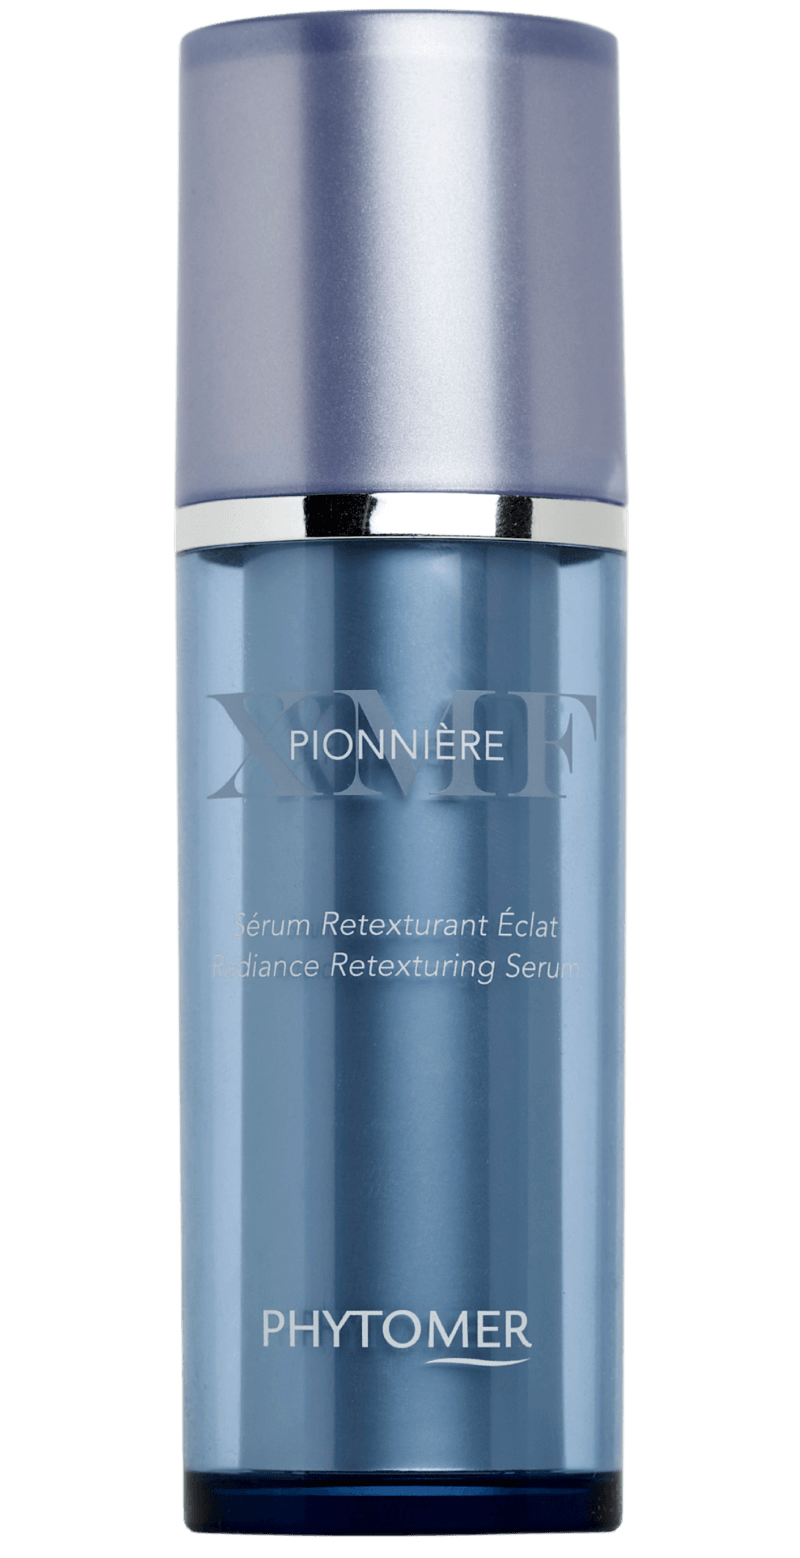 &#39;s Phytomer PIONNIERE XMF Radiance Retexturing Serum - Bellini&#39;s Skin and Parfumerie 